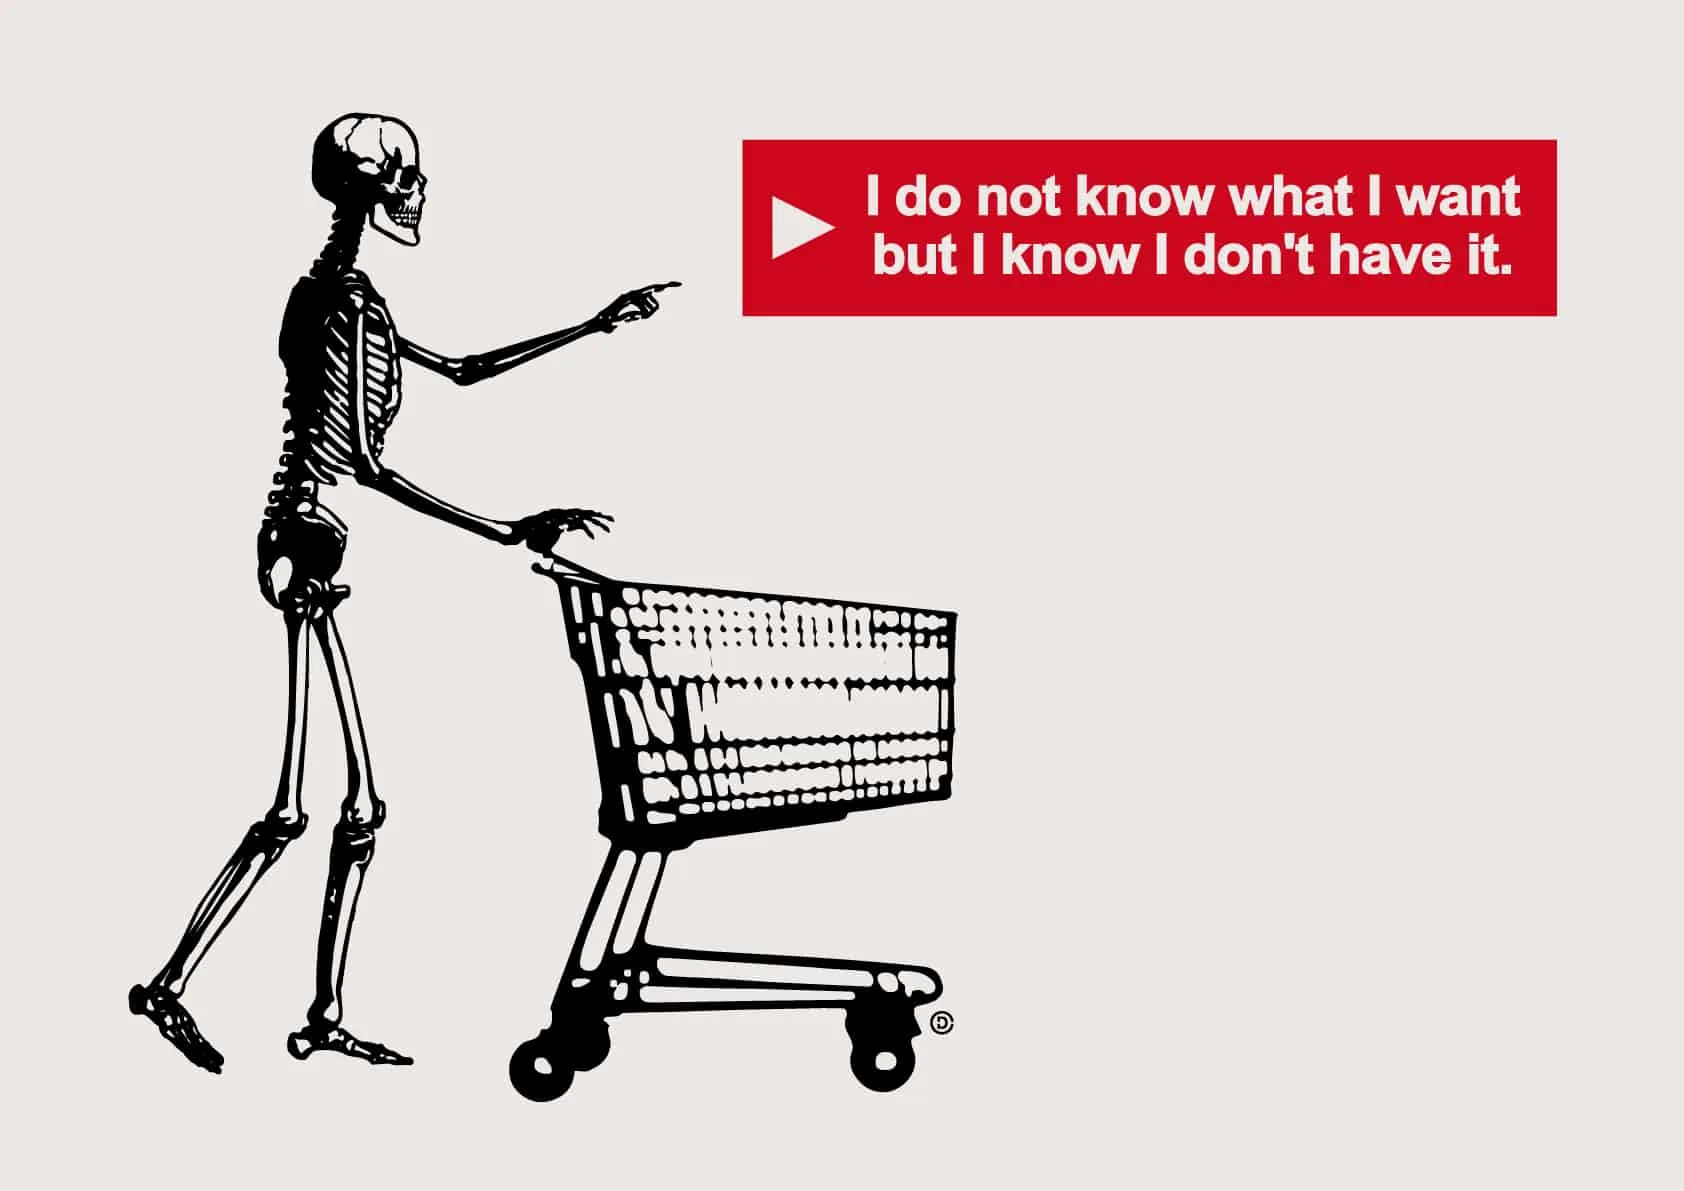 Skeleton pushing a shopping cart